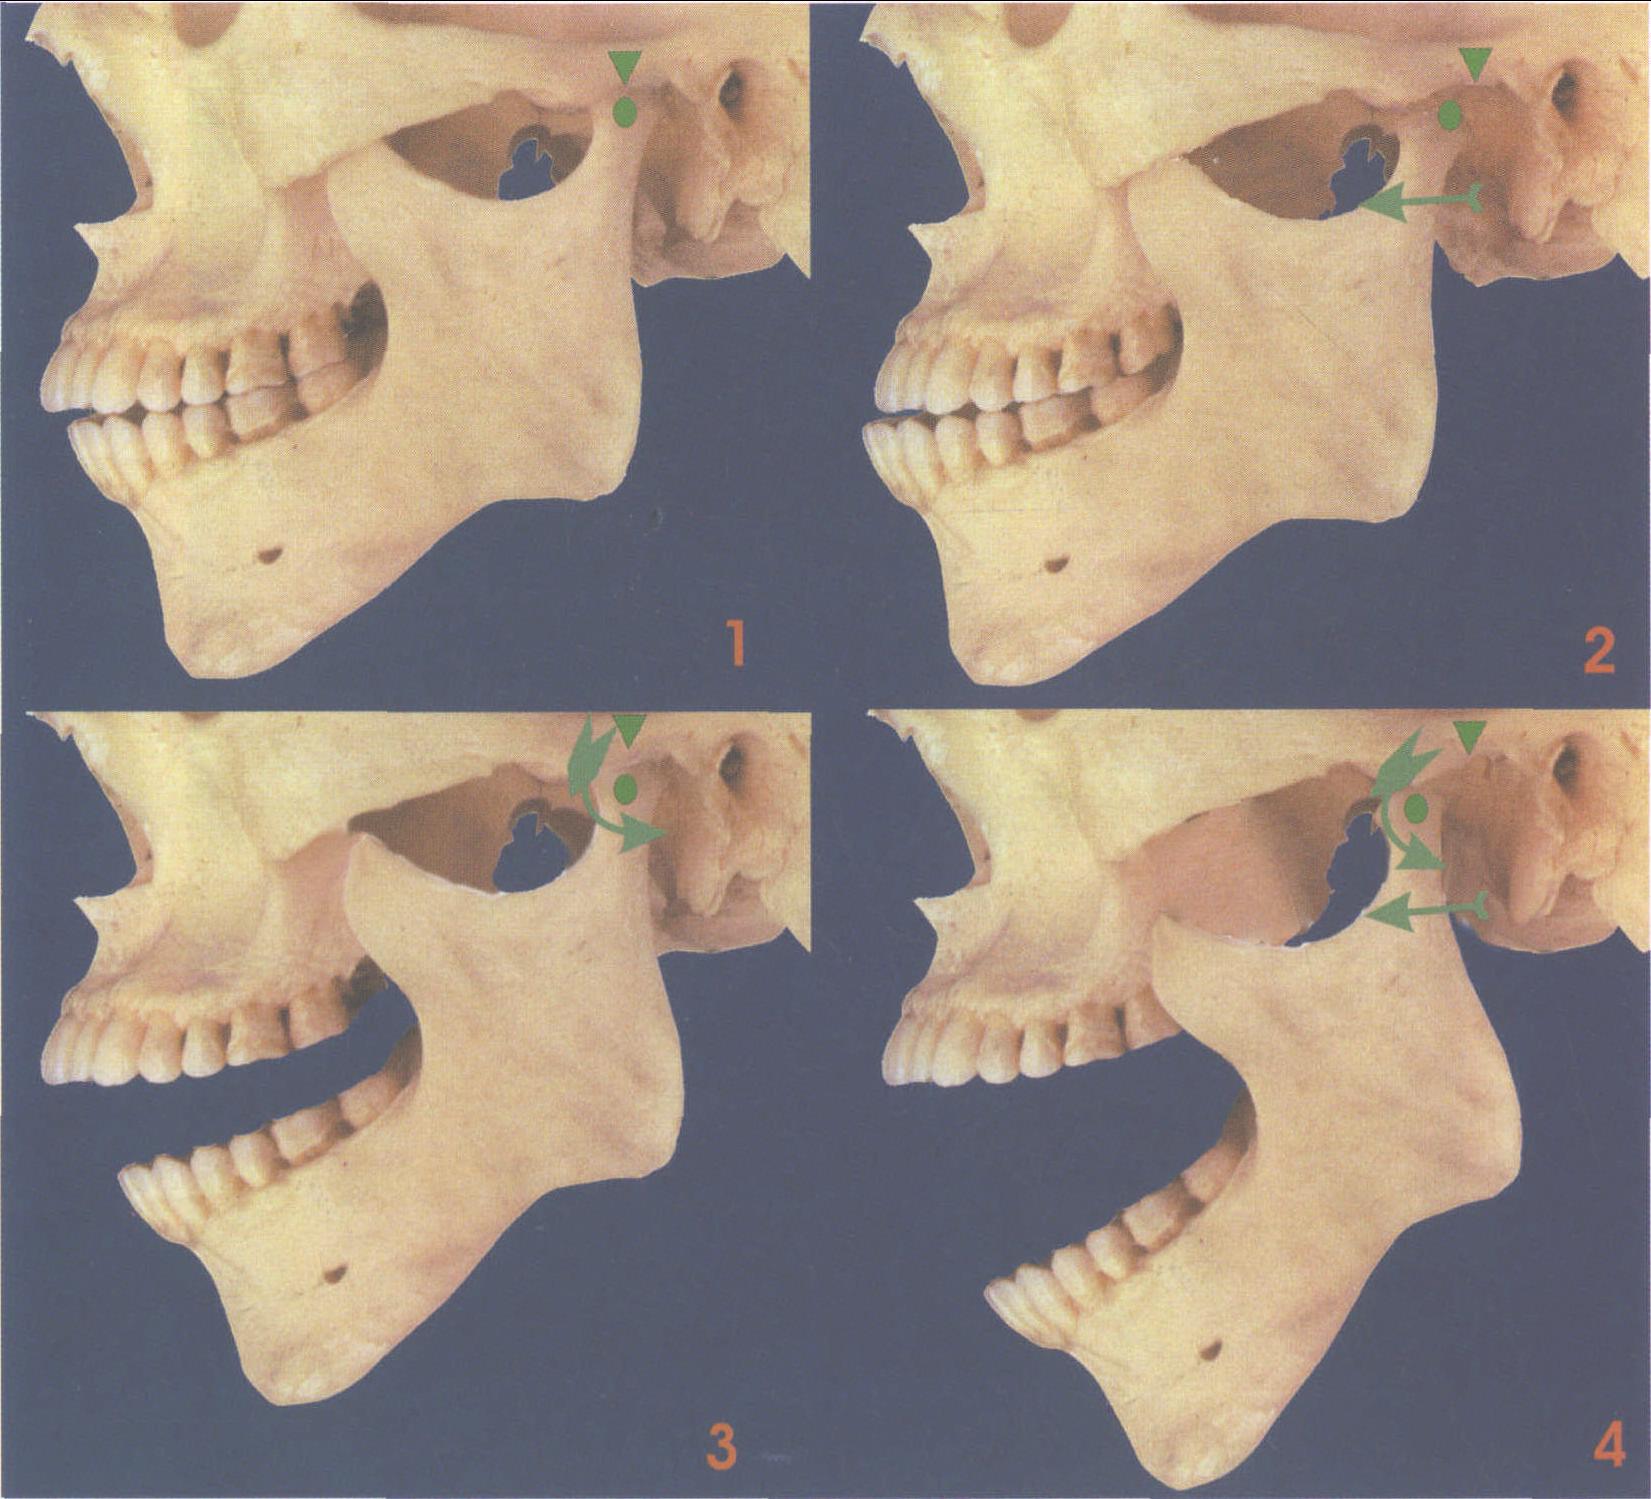 图1-53 下颌骨-临床解剖学-医学